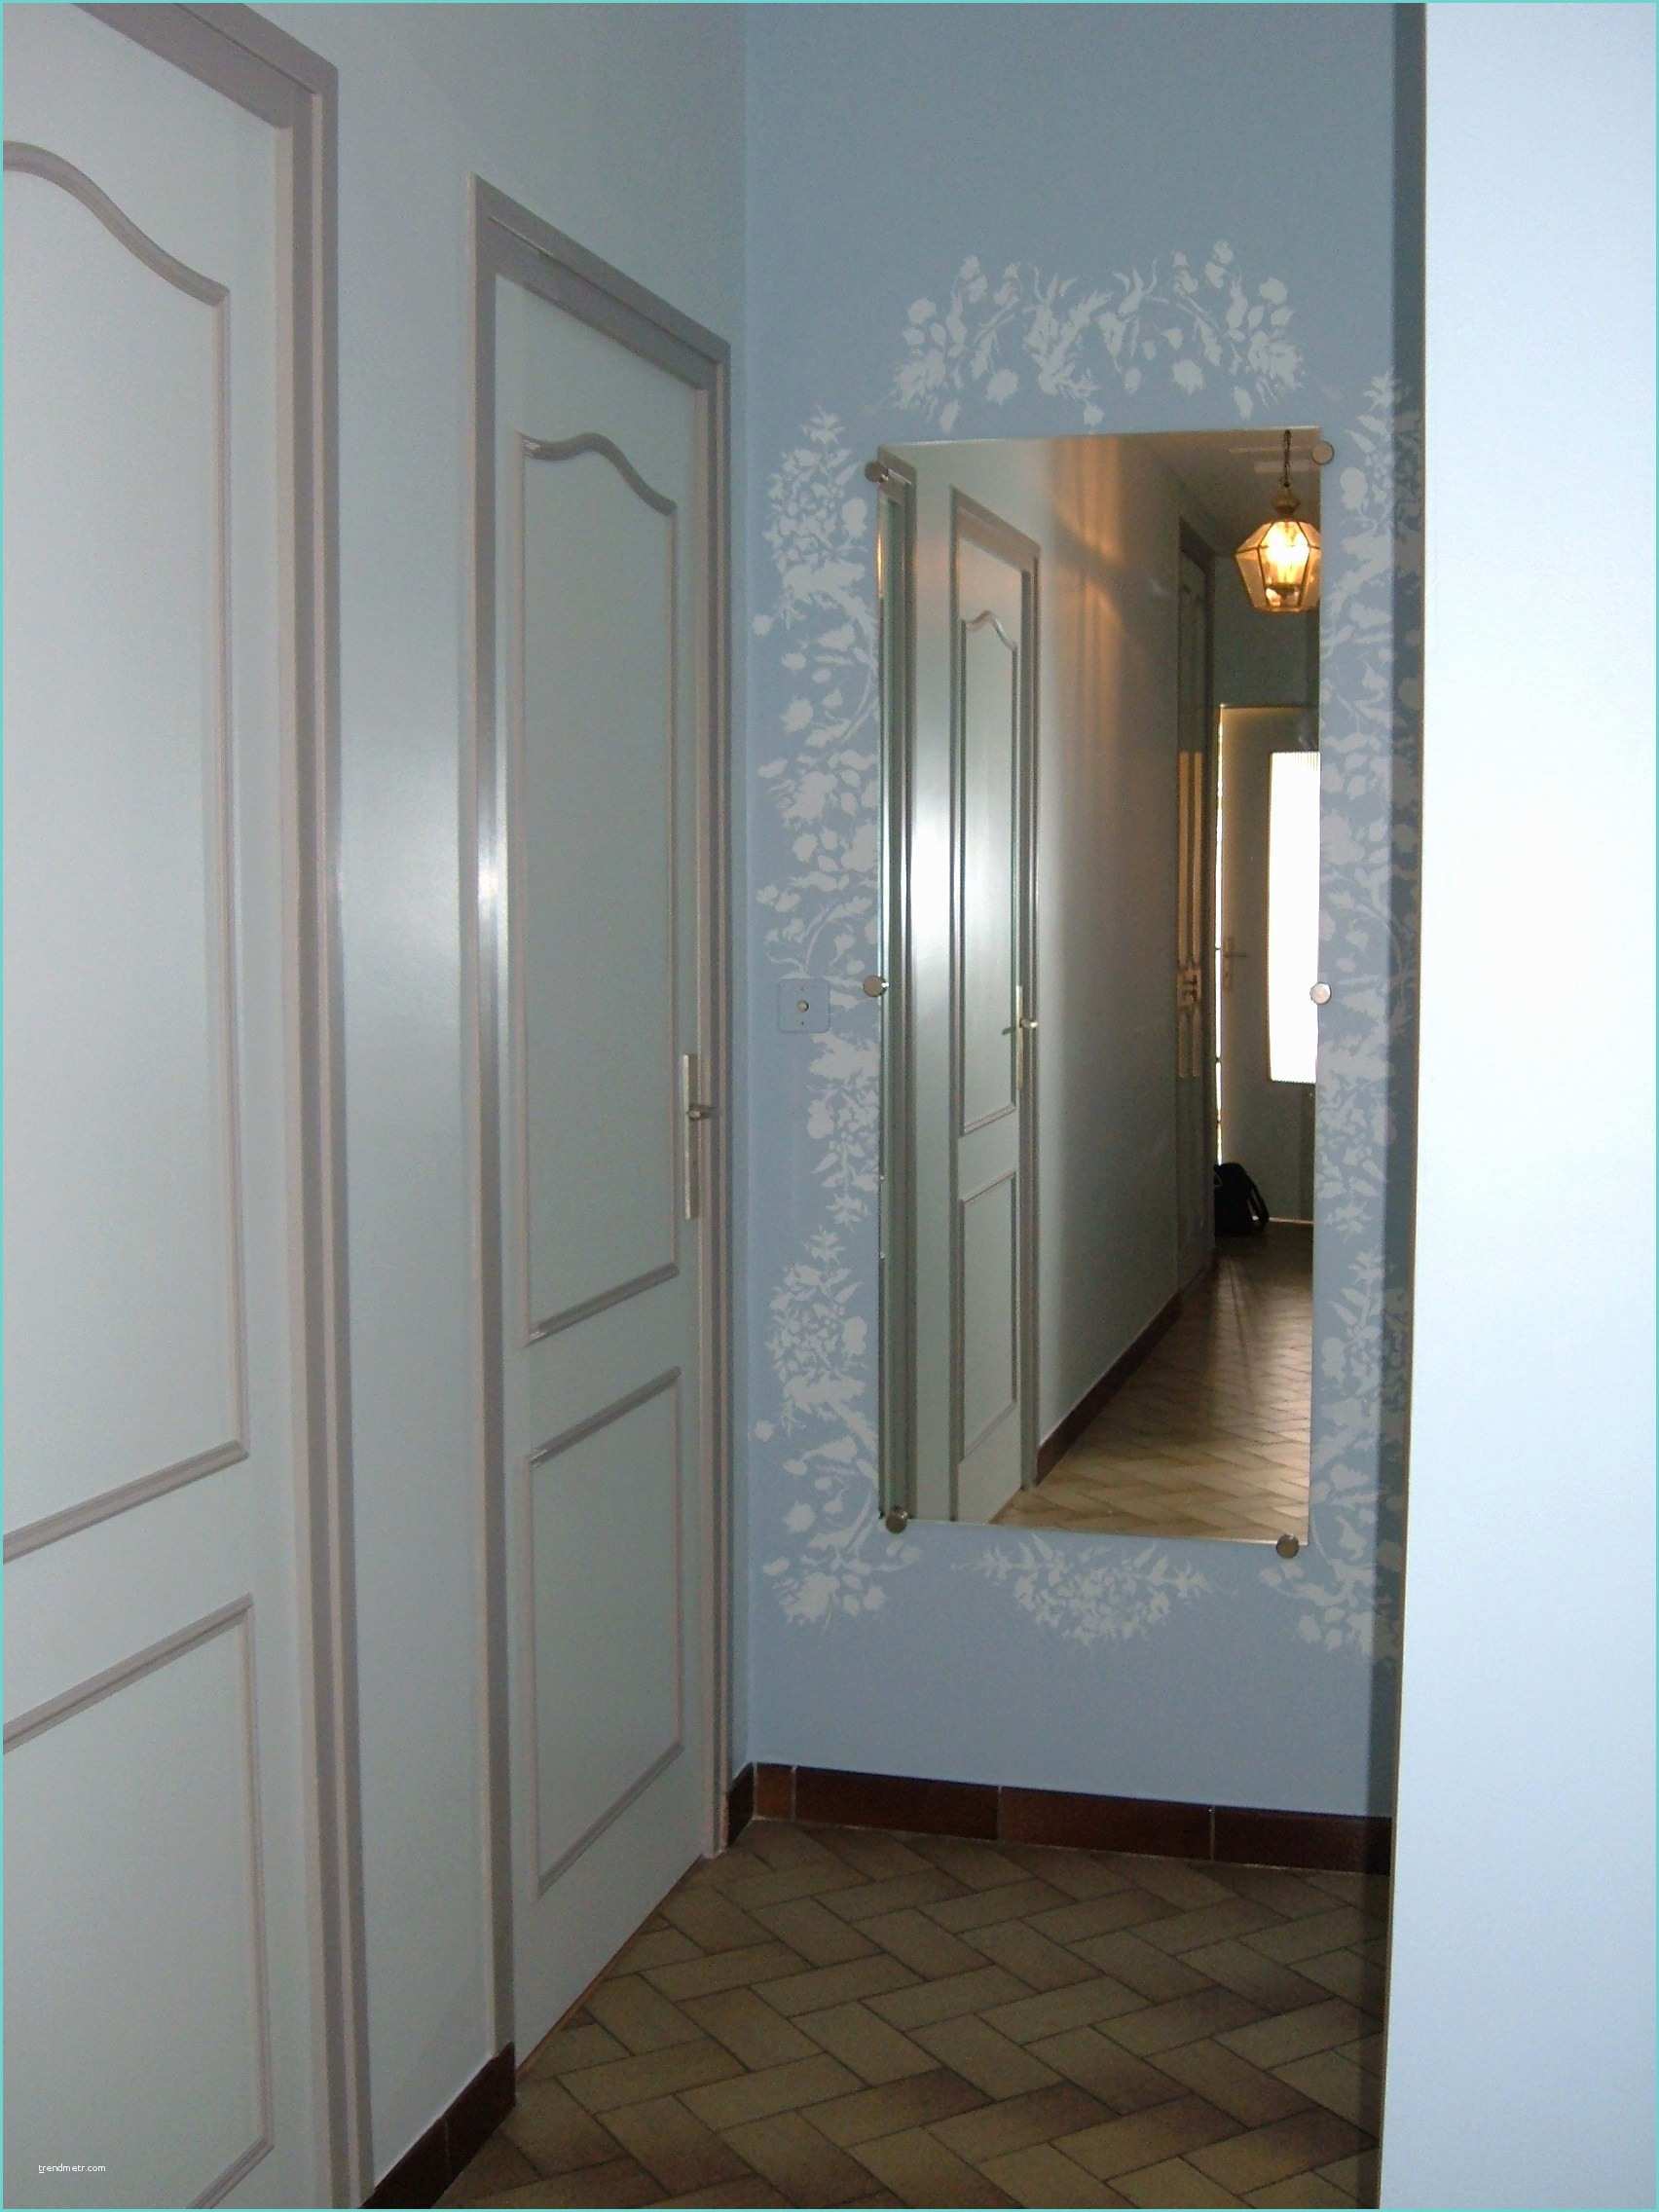 peinture blanche pour porte interieure decoration interieur couleur or schon haut 40 de decoration